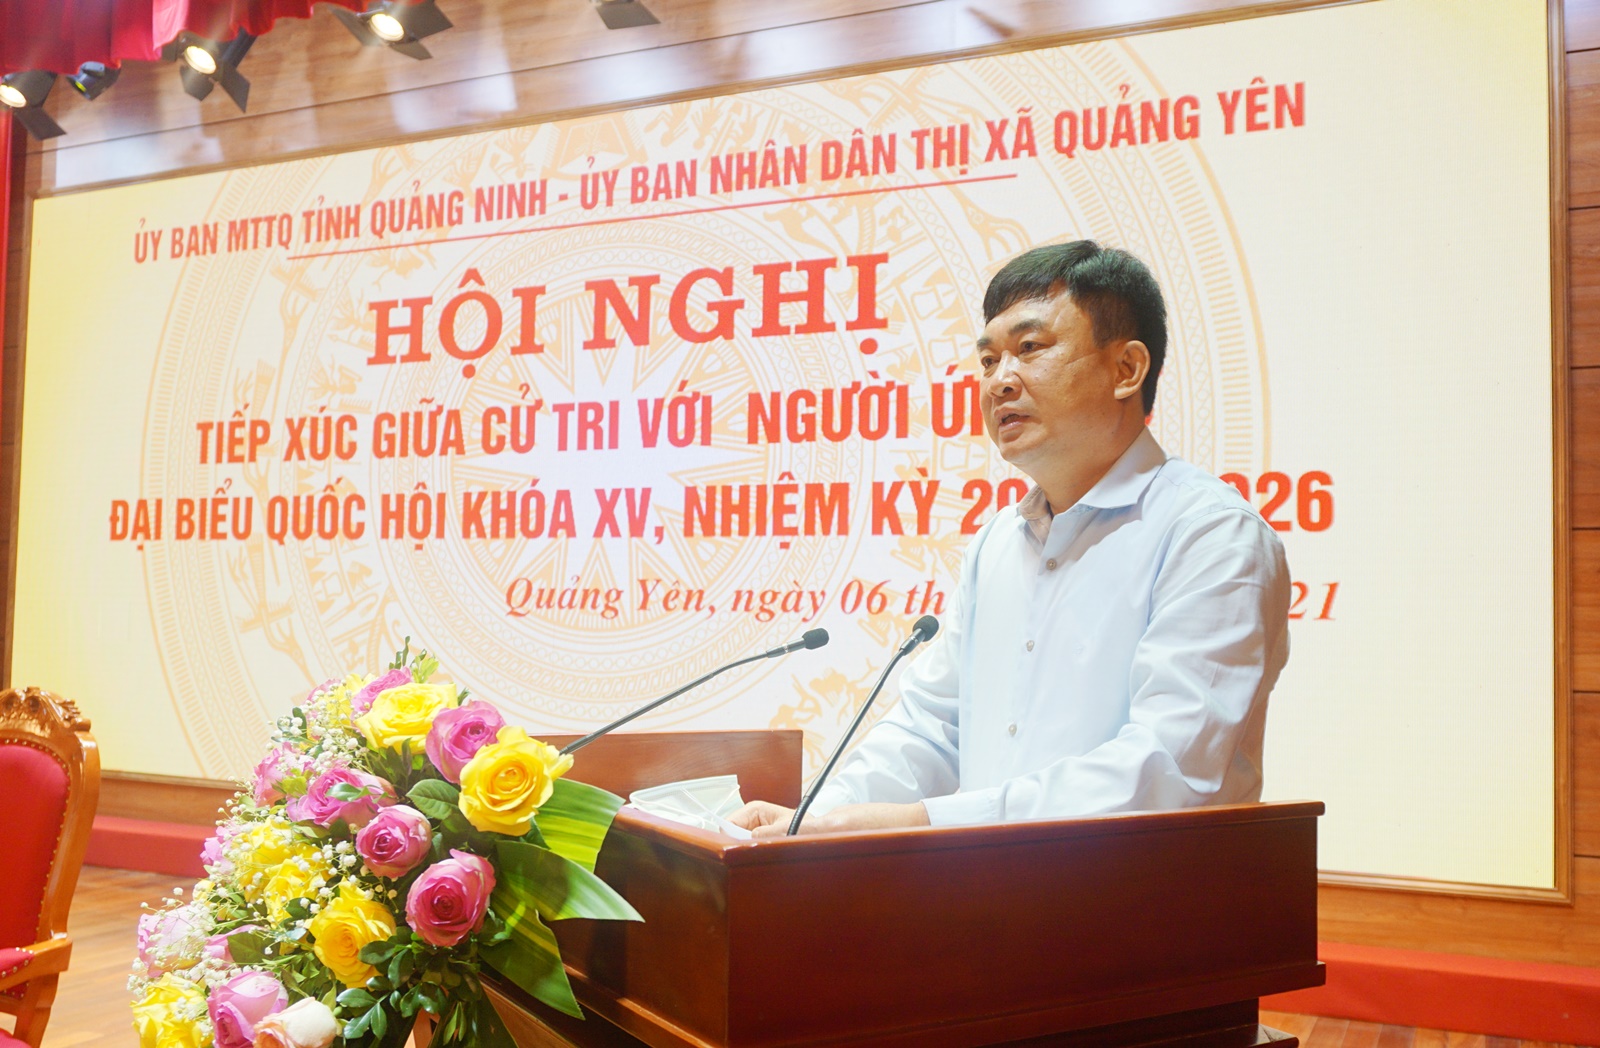 Ông Ngô Hoàng Ngân, Phó Bí thư Thường trực Tỉnh ủy, ứng cử ĐBQH khóa XV, nhiệm kỳ 2021-2026, phát biểu tại buổi tiếp xúc.